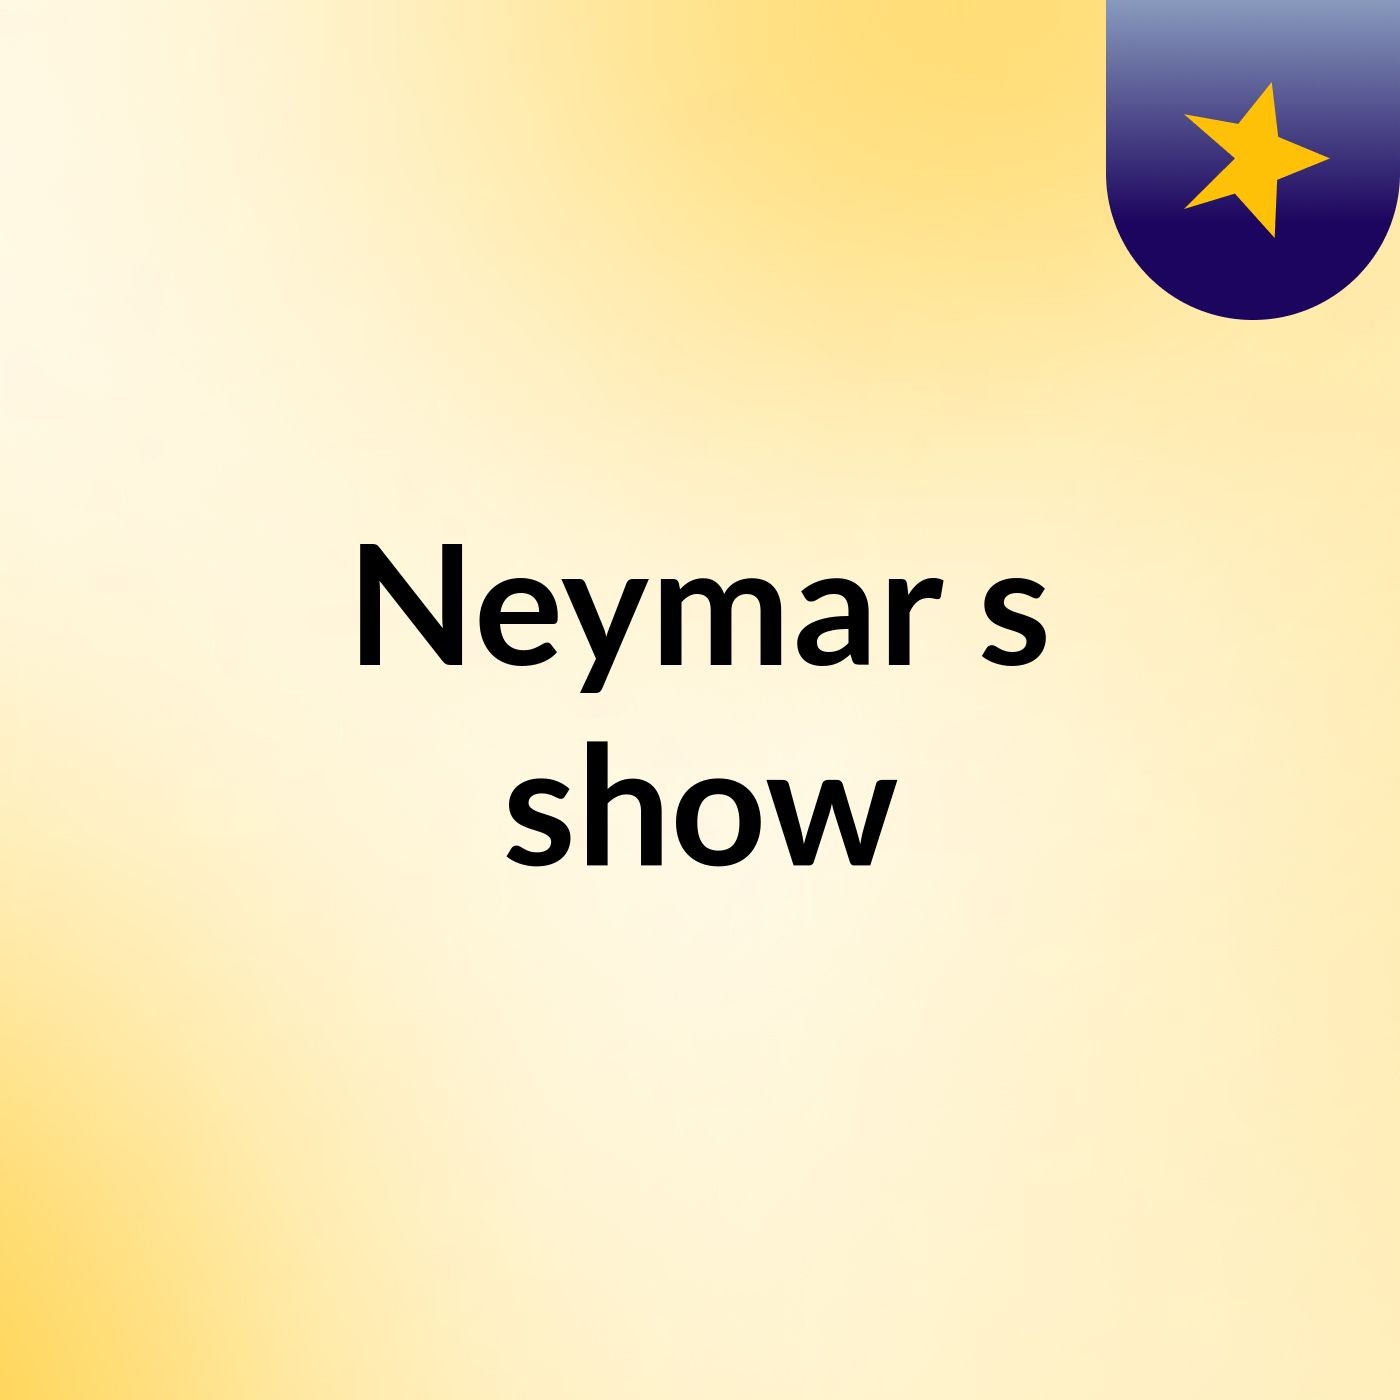 Neymar's show